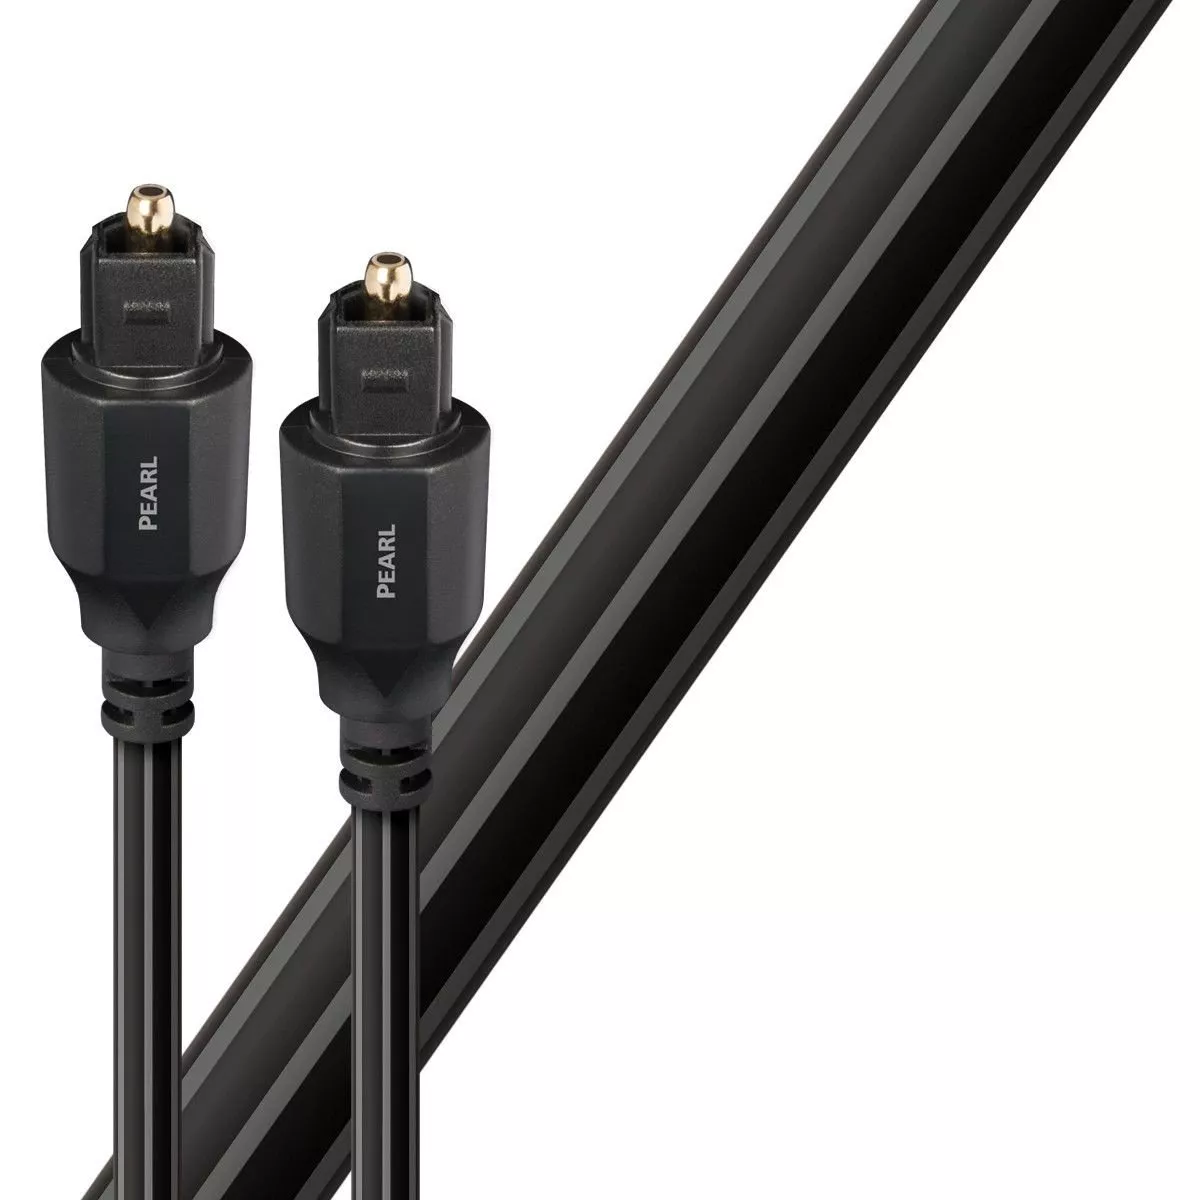 Cablu optic Toslink - Toslink AudioQuest Pearl 5 m, [],audioclub.ro